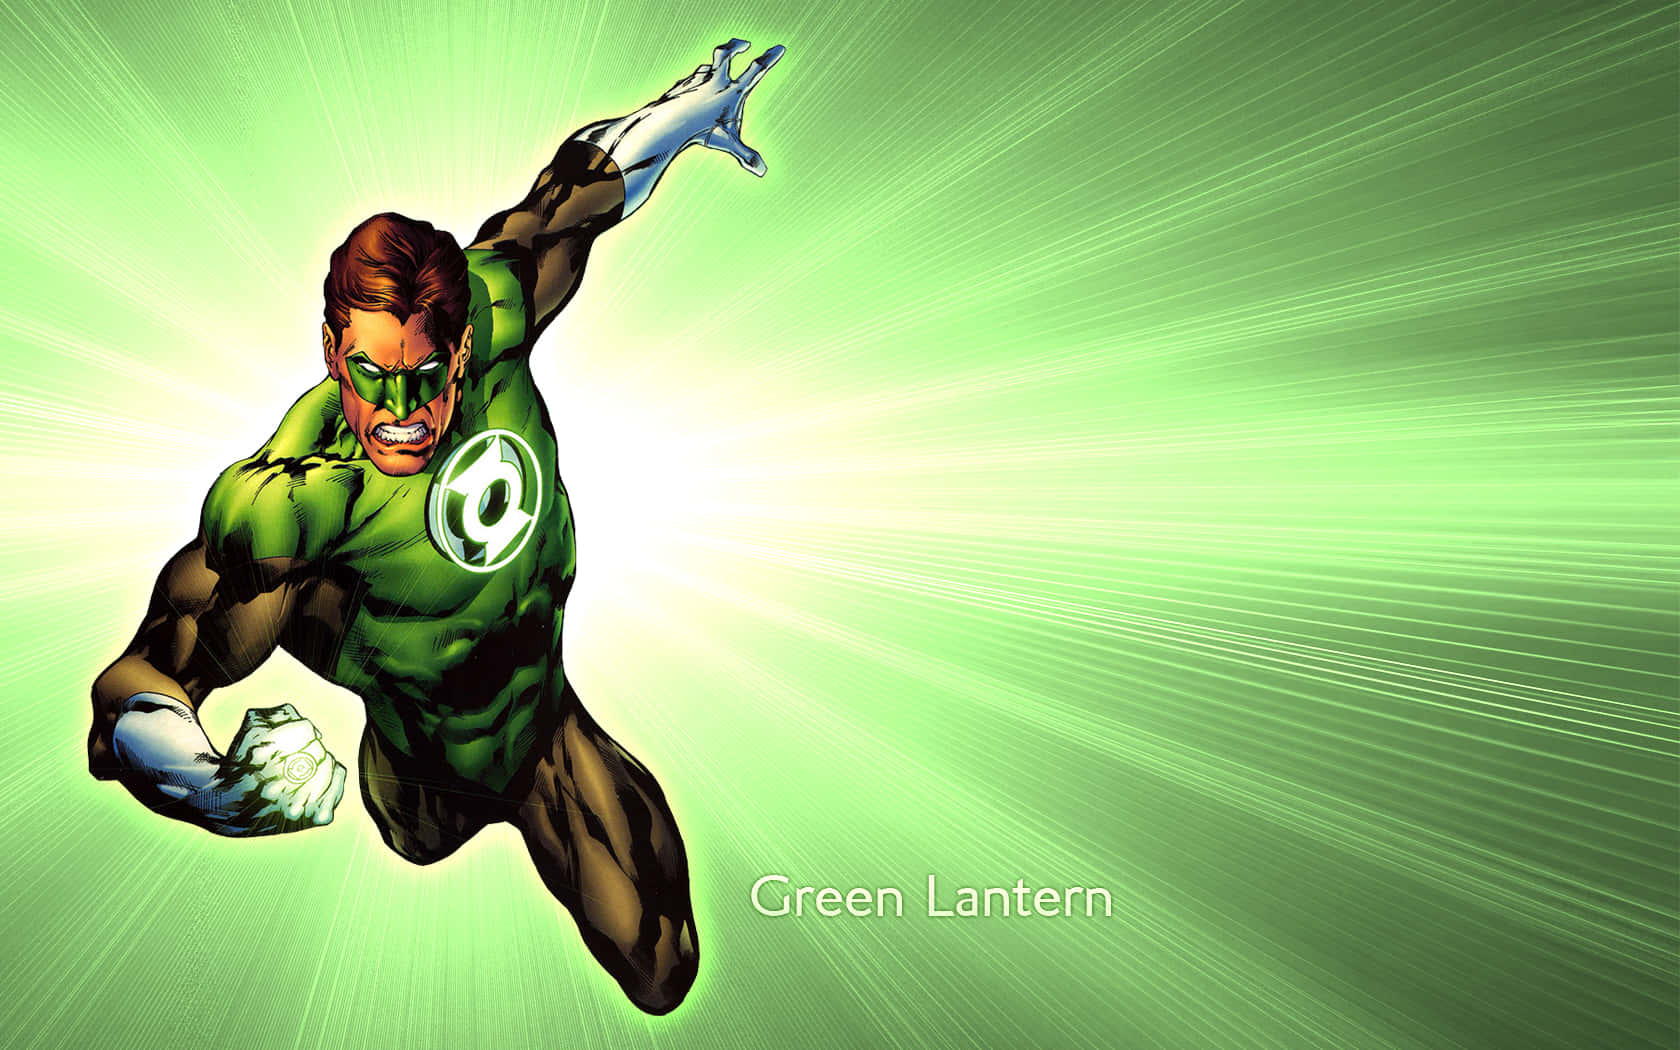 Eindesktop-hintergrund Mit Dem Ikonischen Green Lantern Charakter